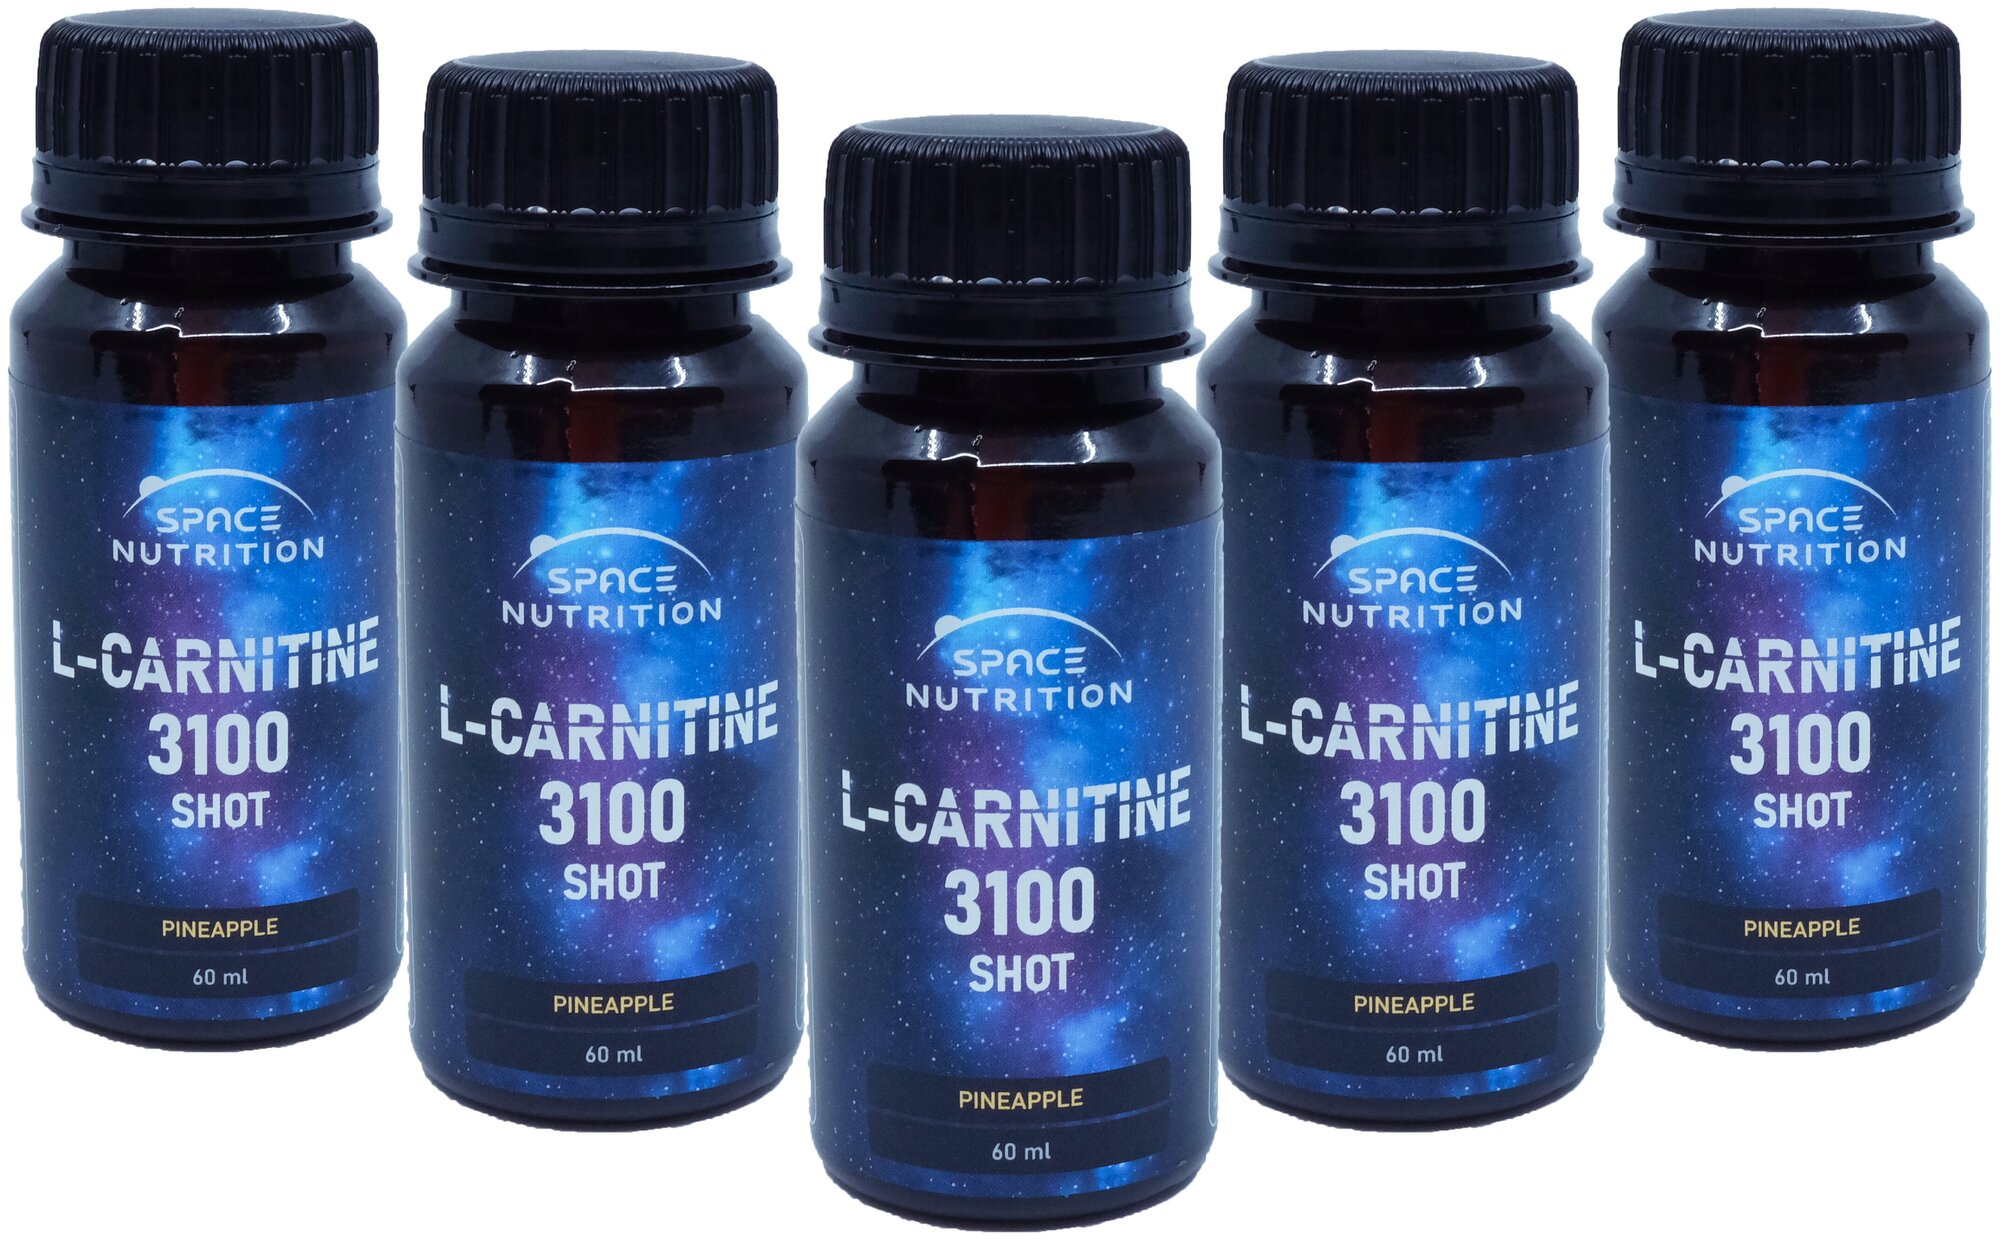 l-карнитин л-карнитин спортивное питание l-carnitine жиросжигатель для похудения сушка 5шт по 60мл